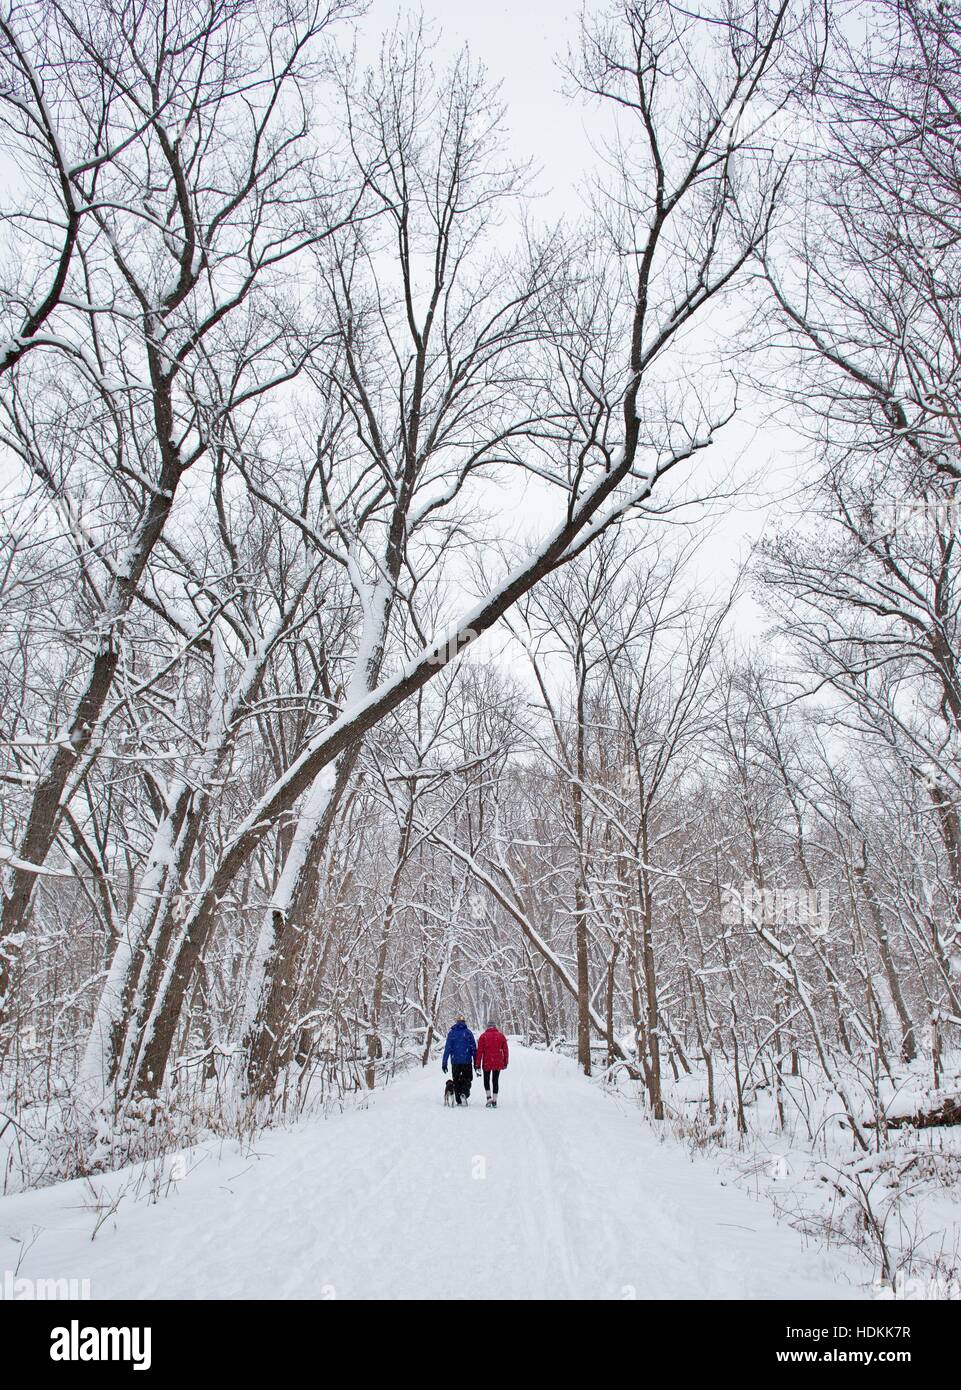 Un homme, femme, et chien, marchant sur un chemin enneigé dans une zone boisée. Banque D'Images